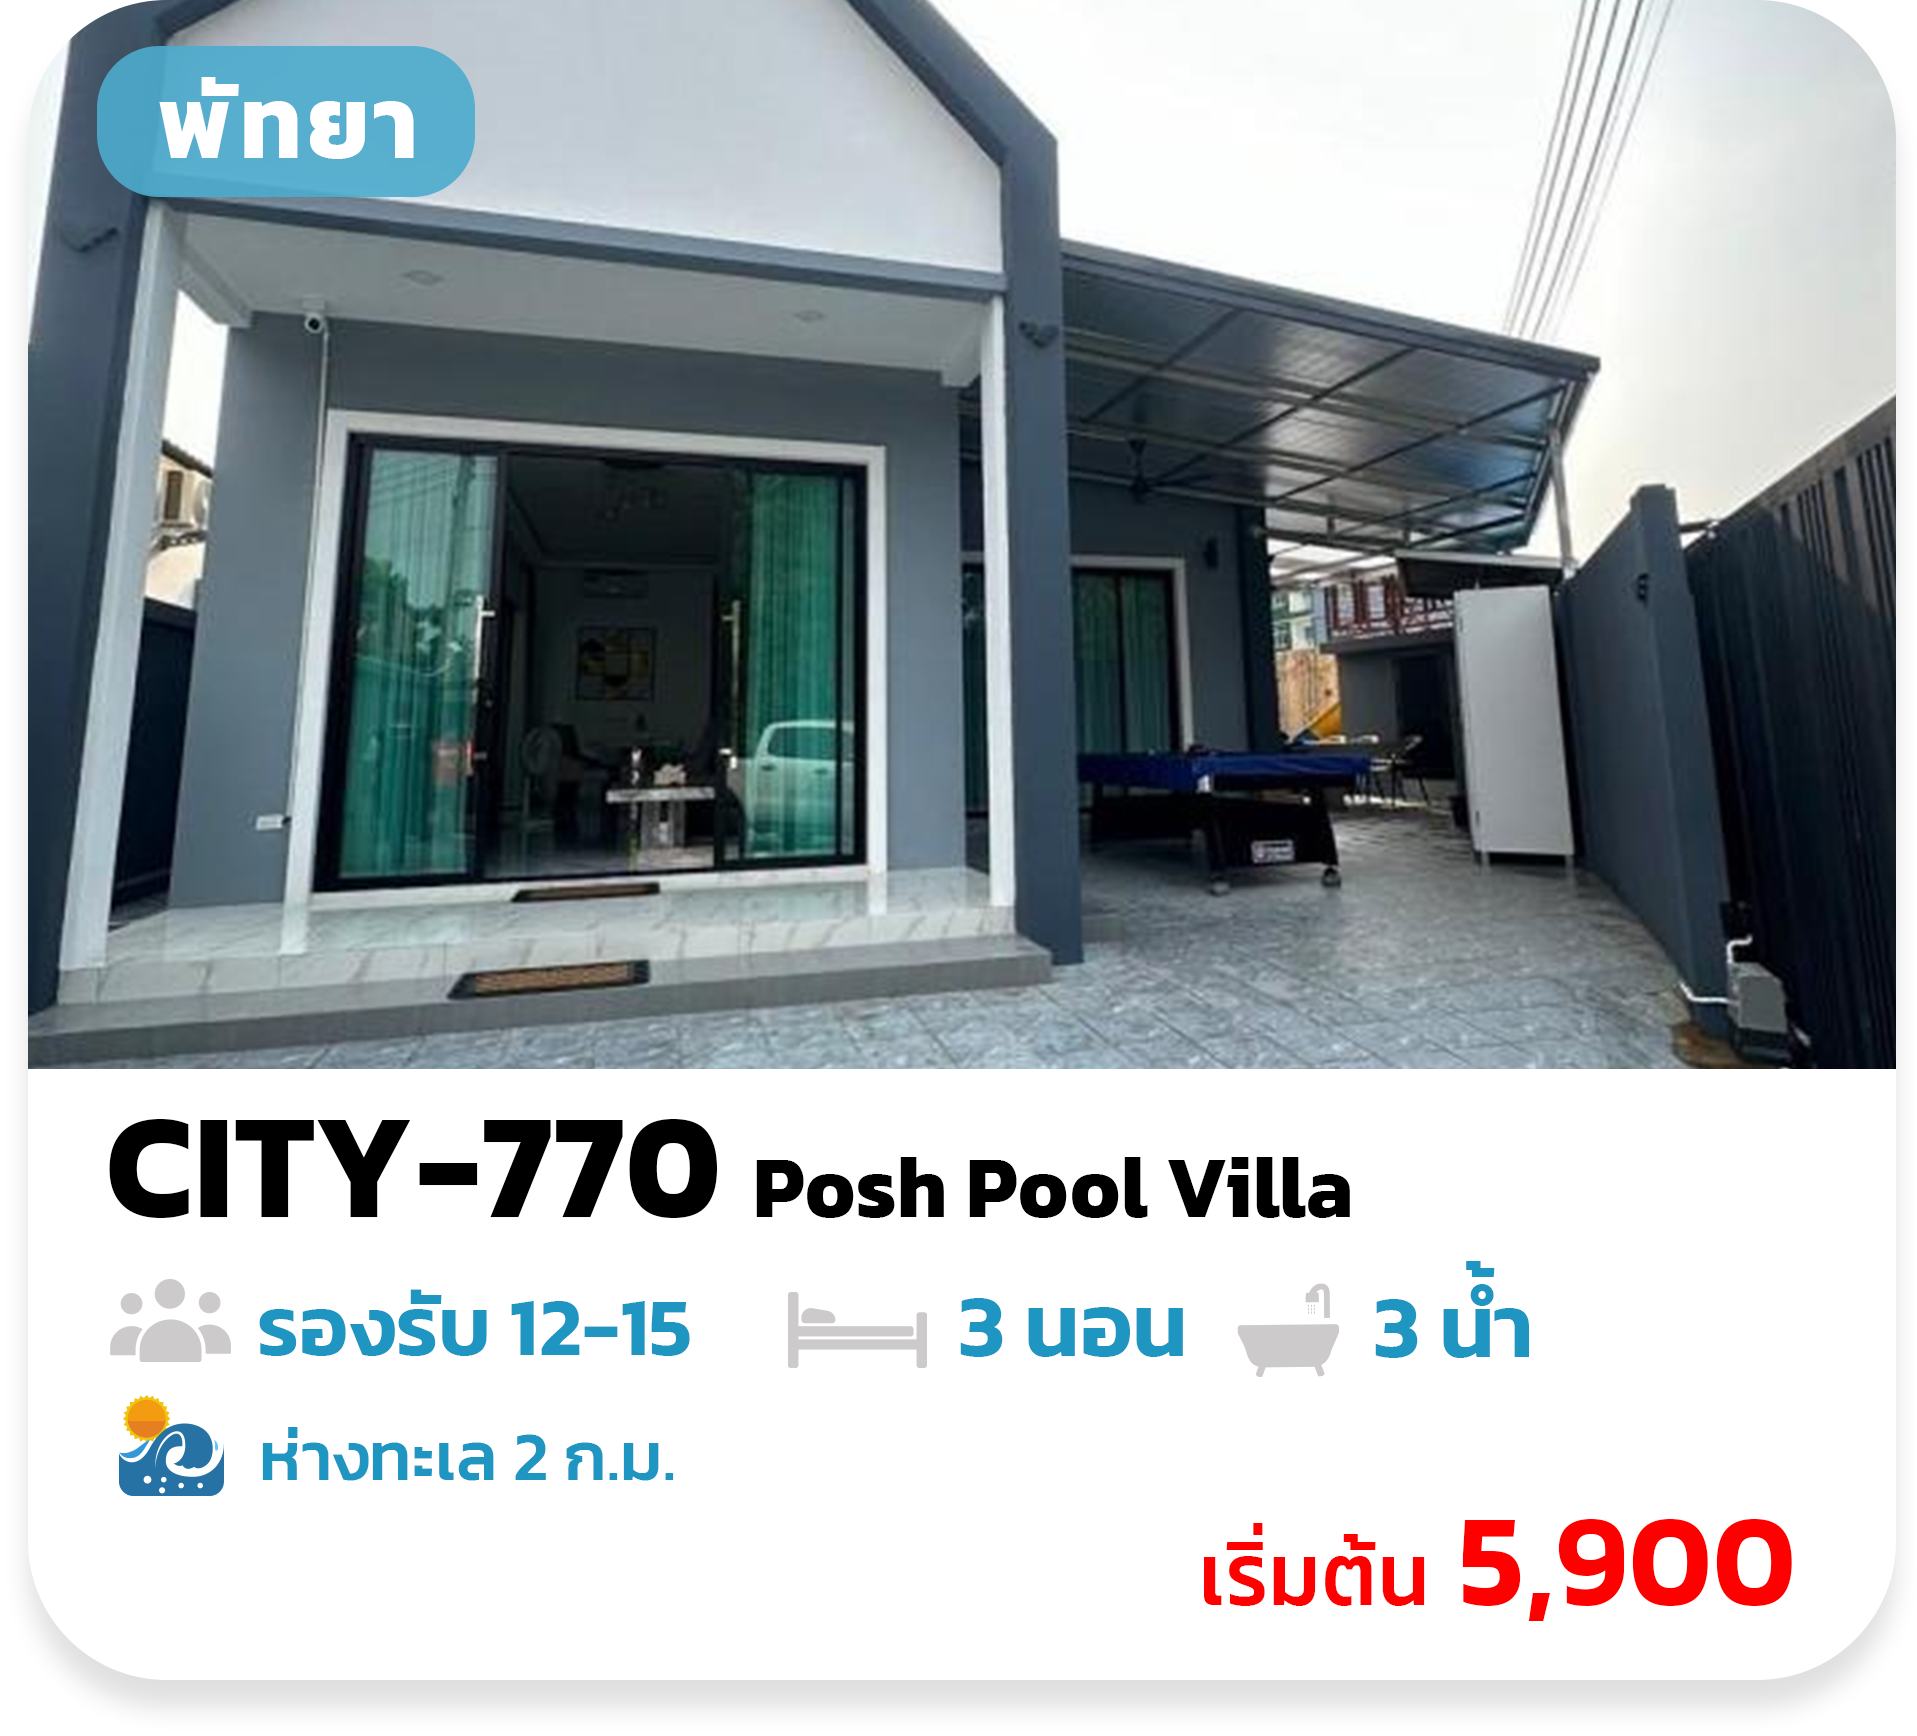 CITY-770 Posh Pool Villa